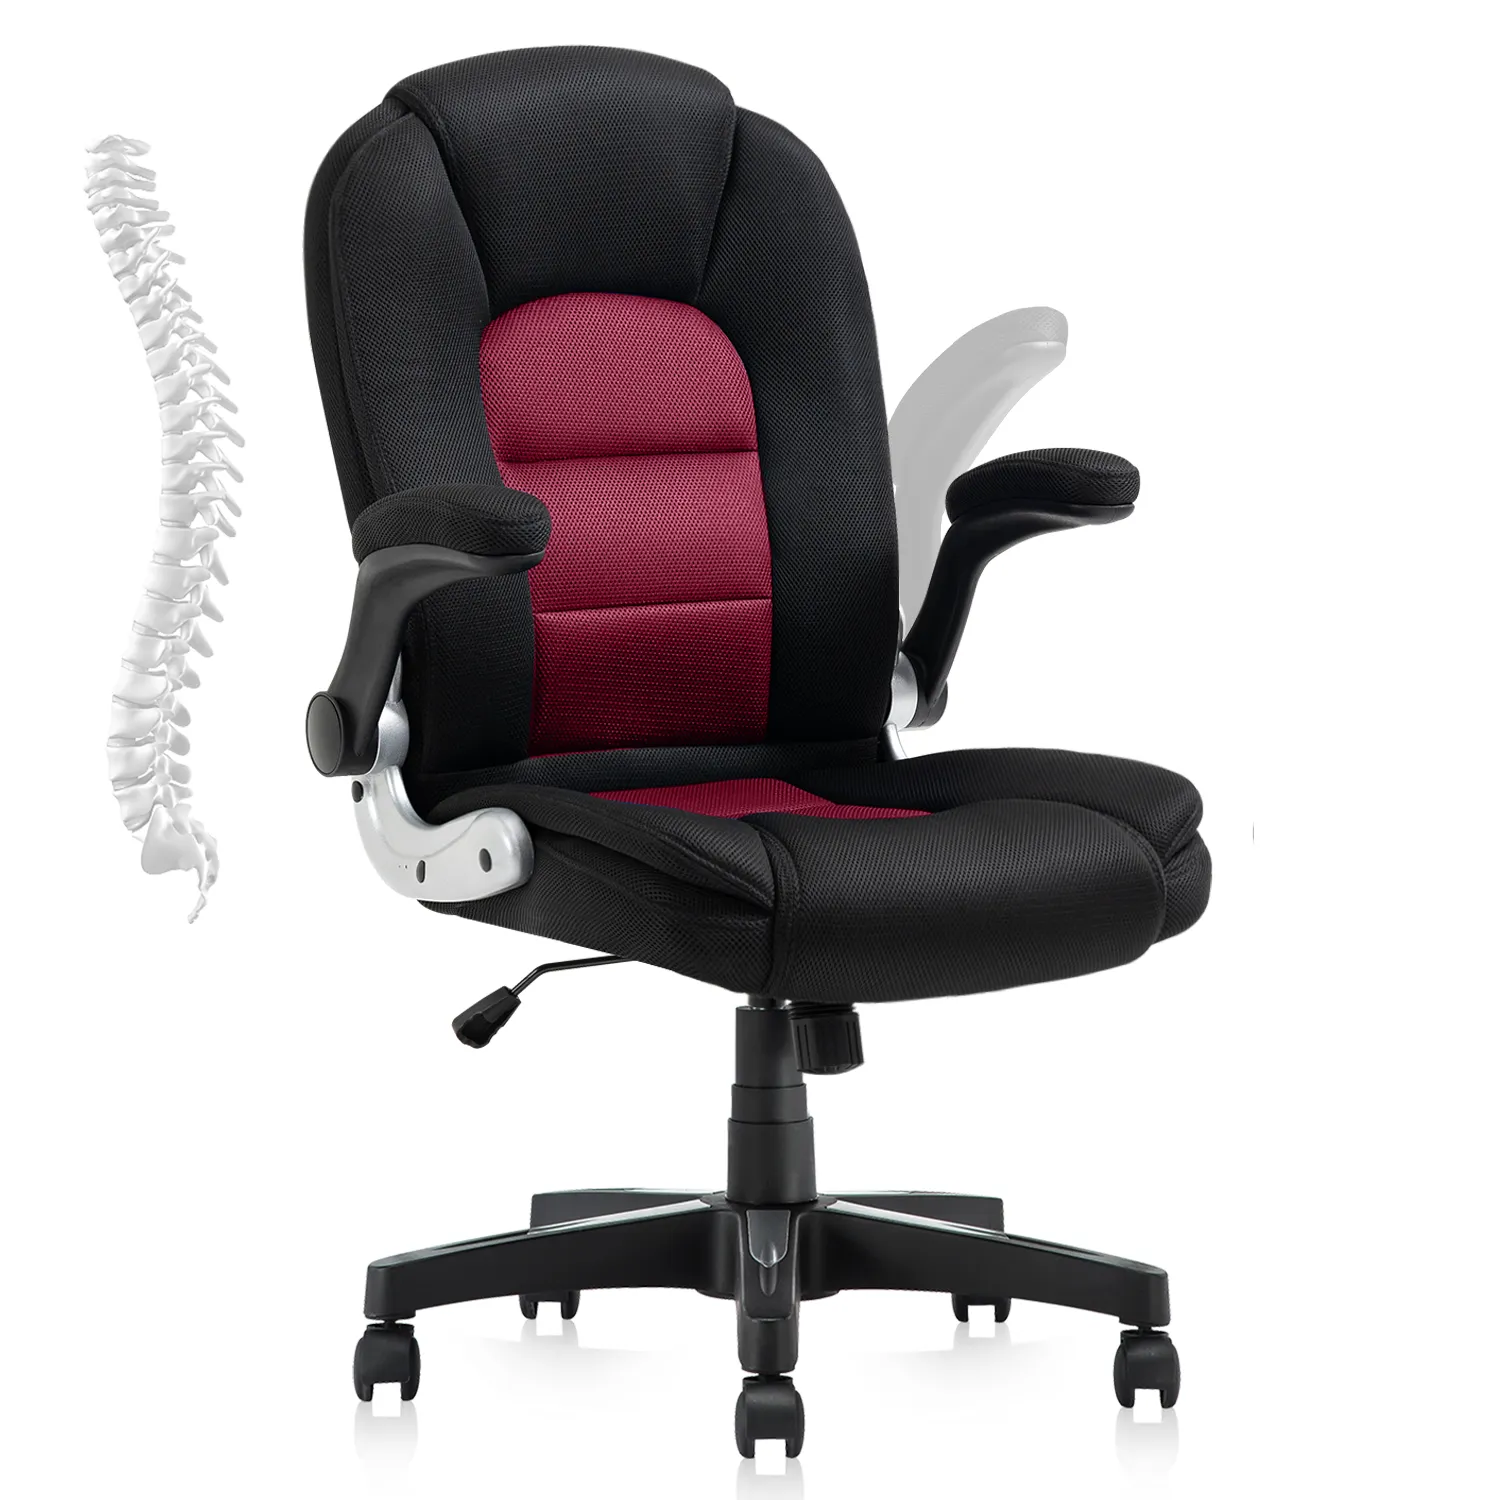 Cadeira moderna confortável cadeira ergonômica do escritório executivo com aleta acima o apoio lombar dos braços e as rodas